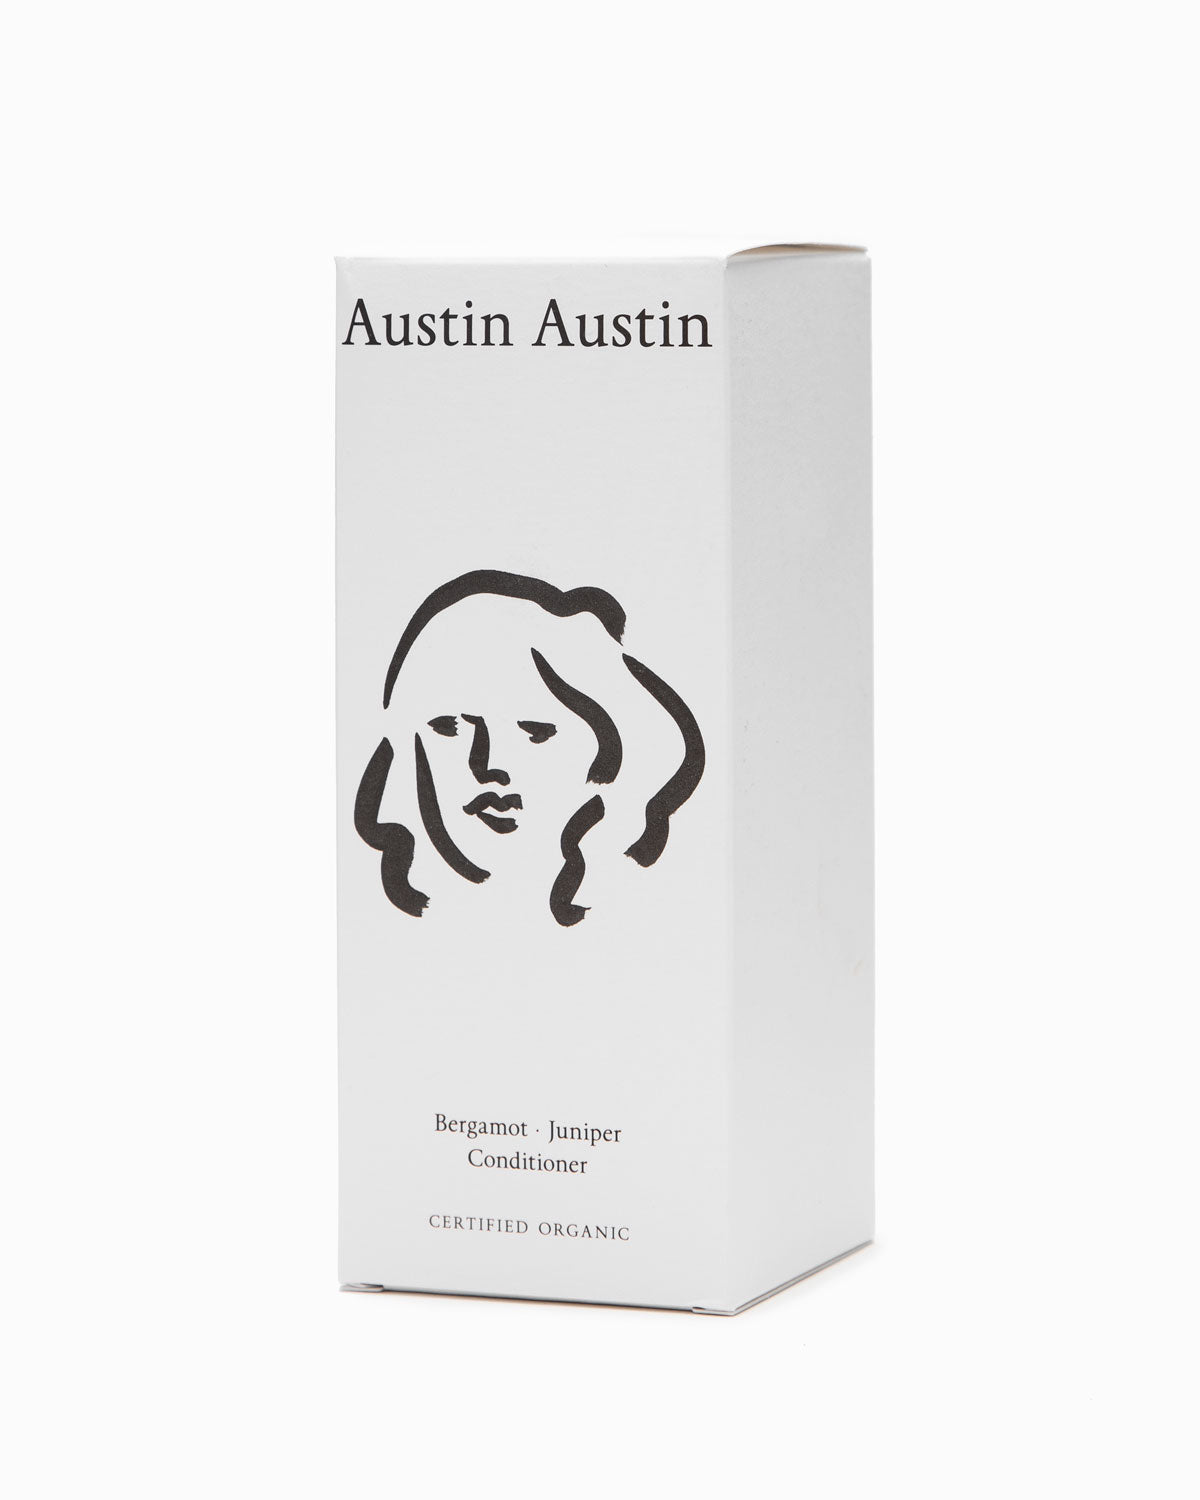 Bergamot & Juniper Conditioner - Austin Austin